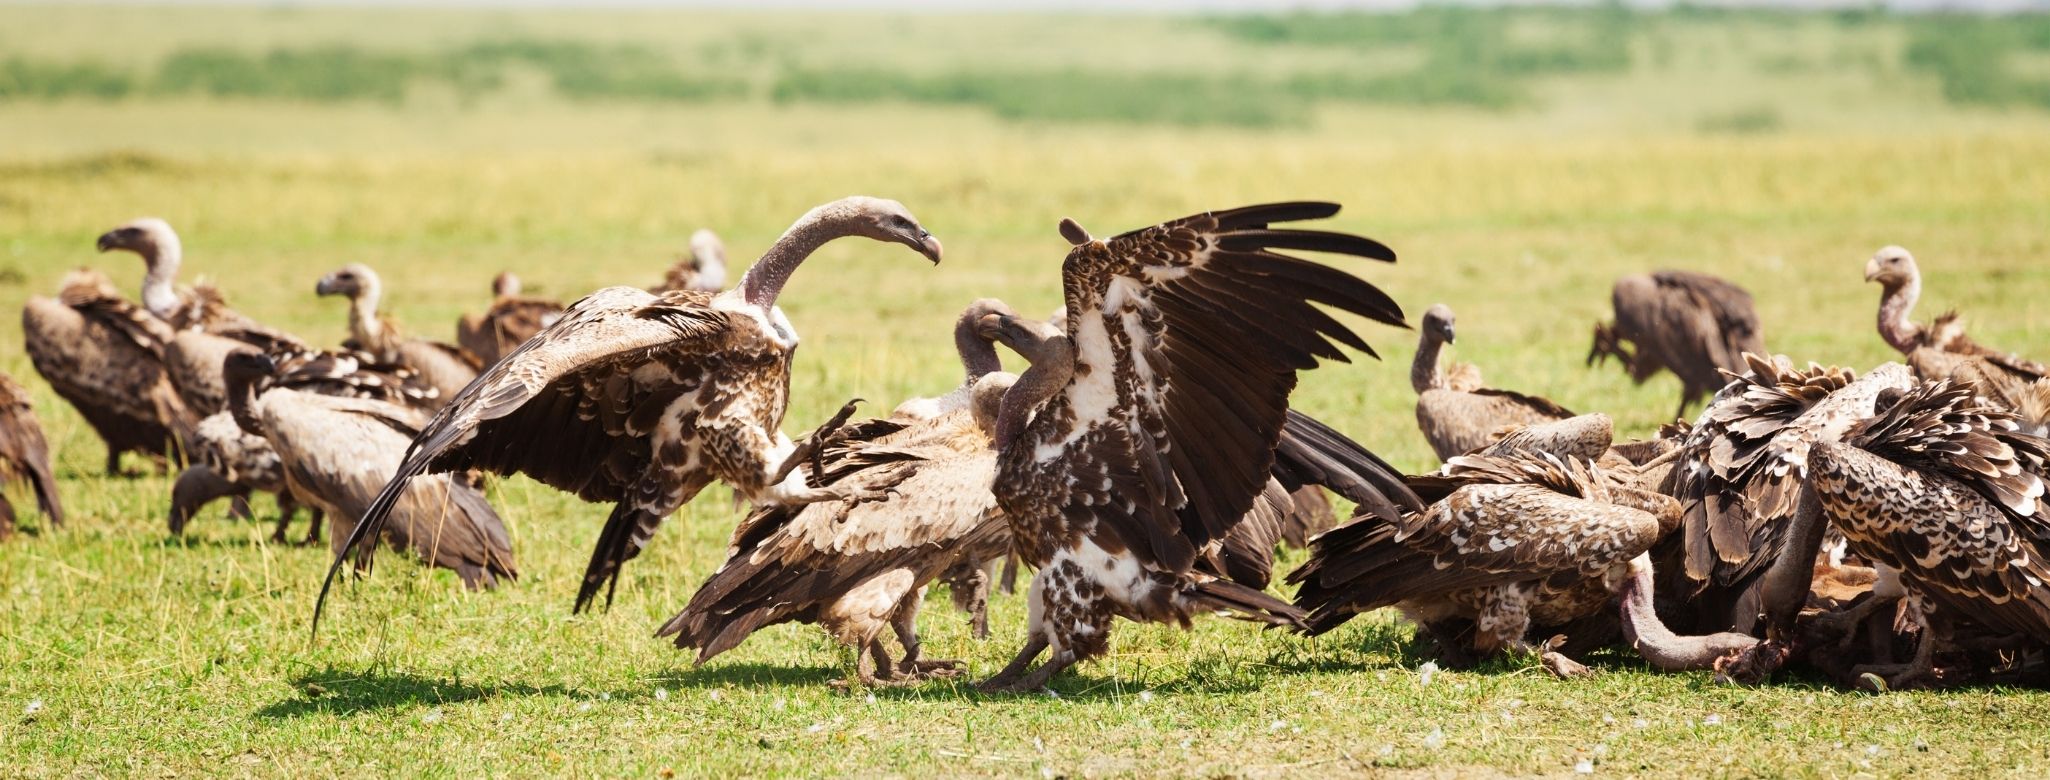 buzzard, vulture removal Virginia